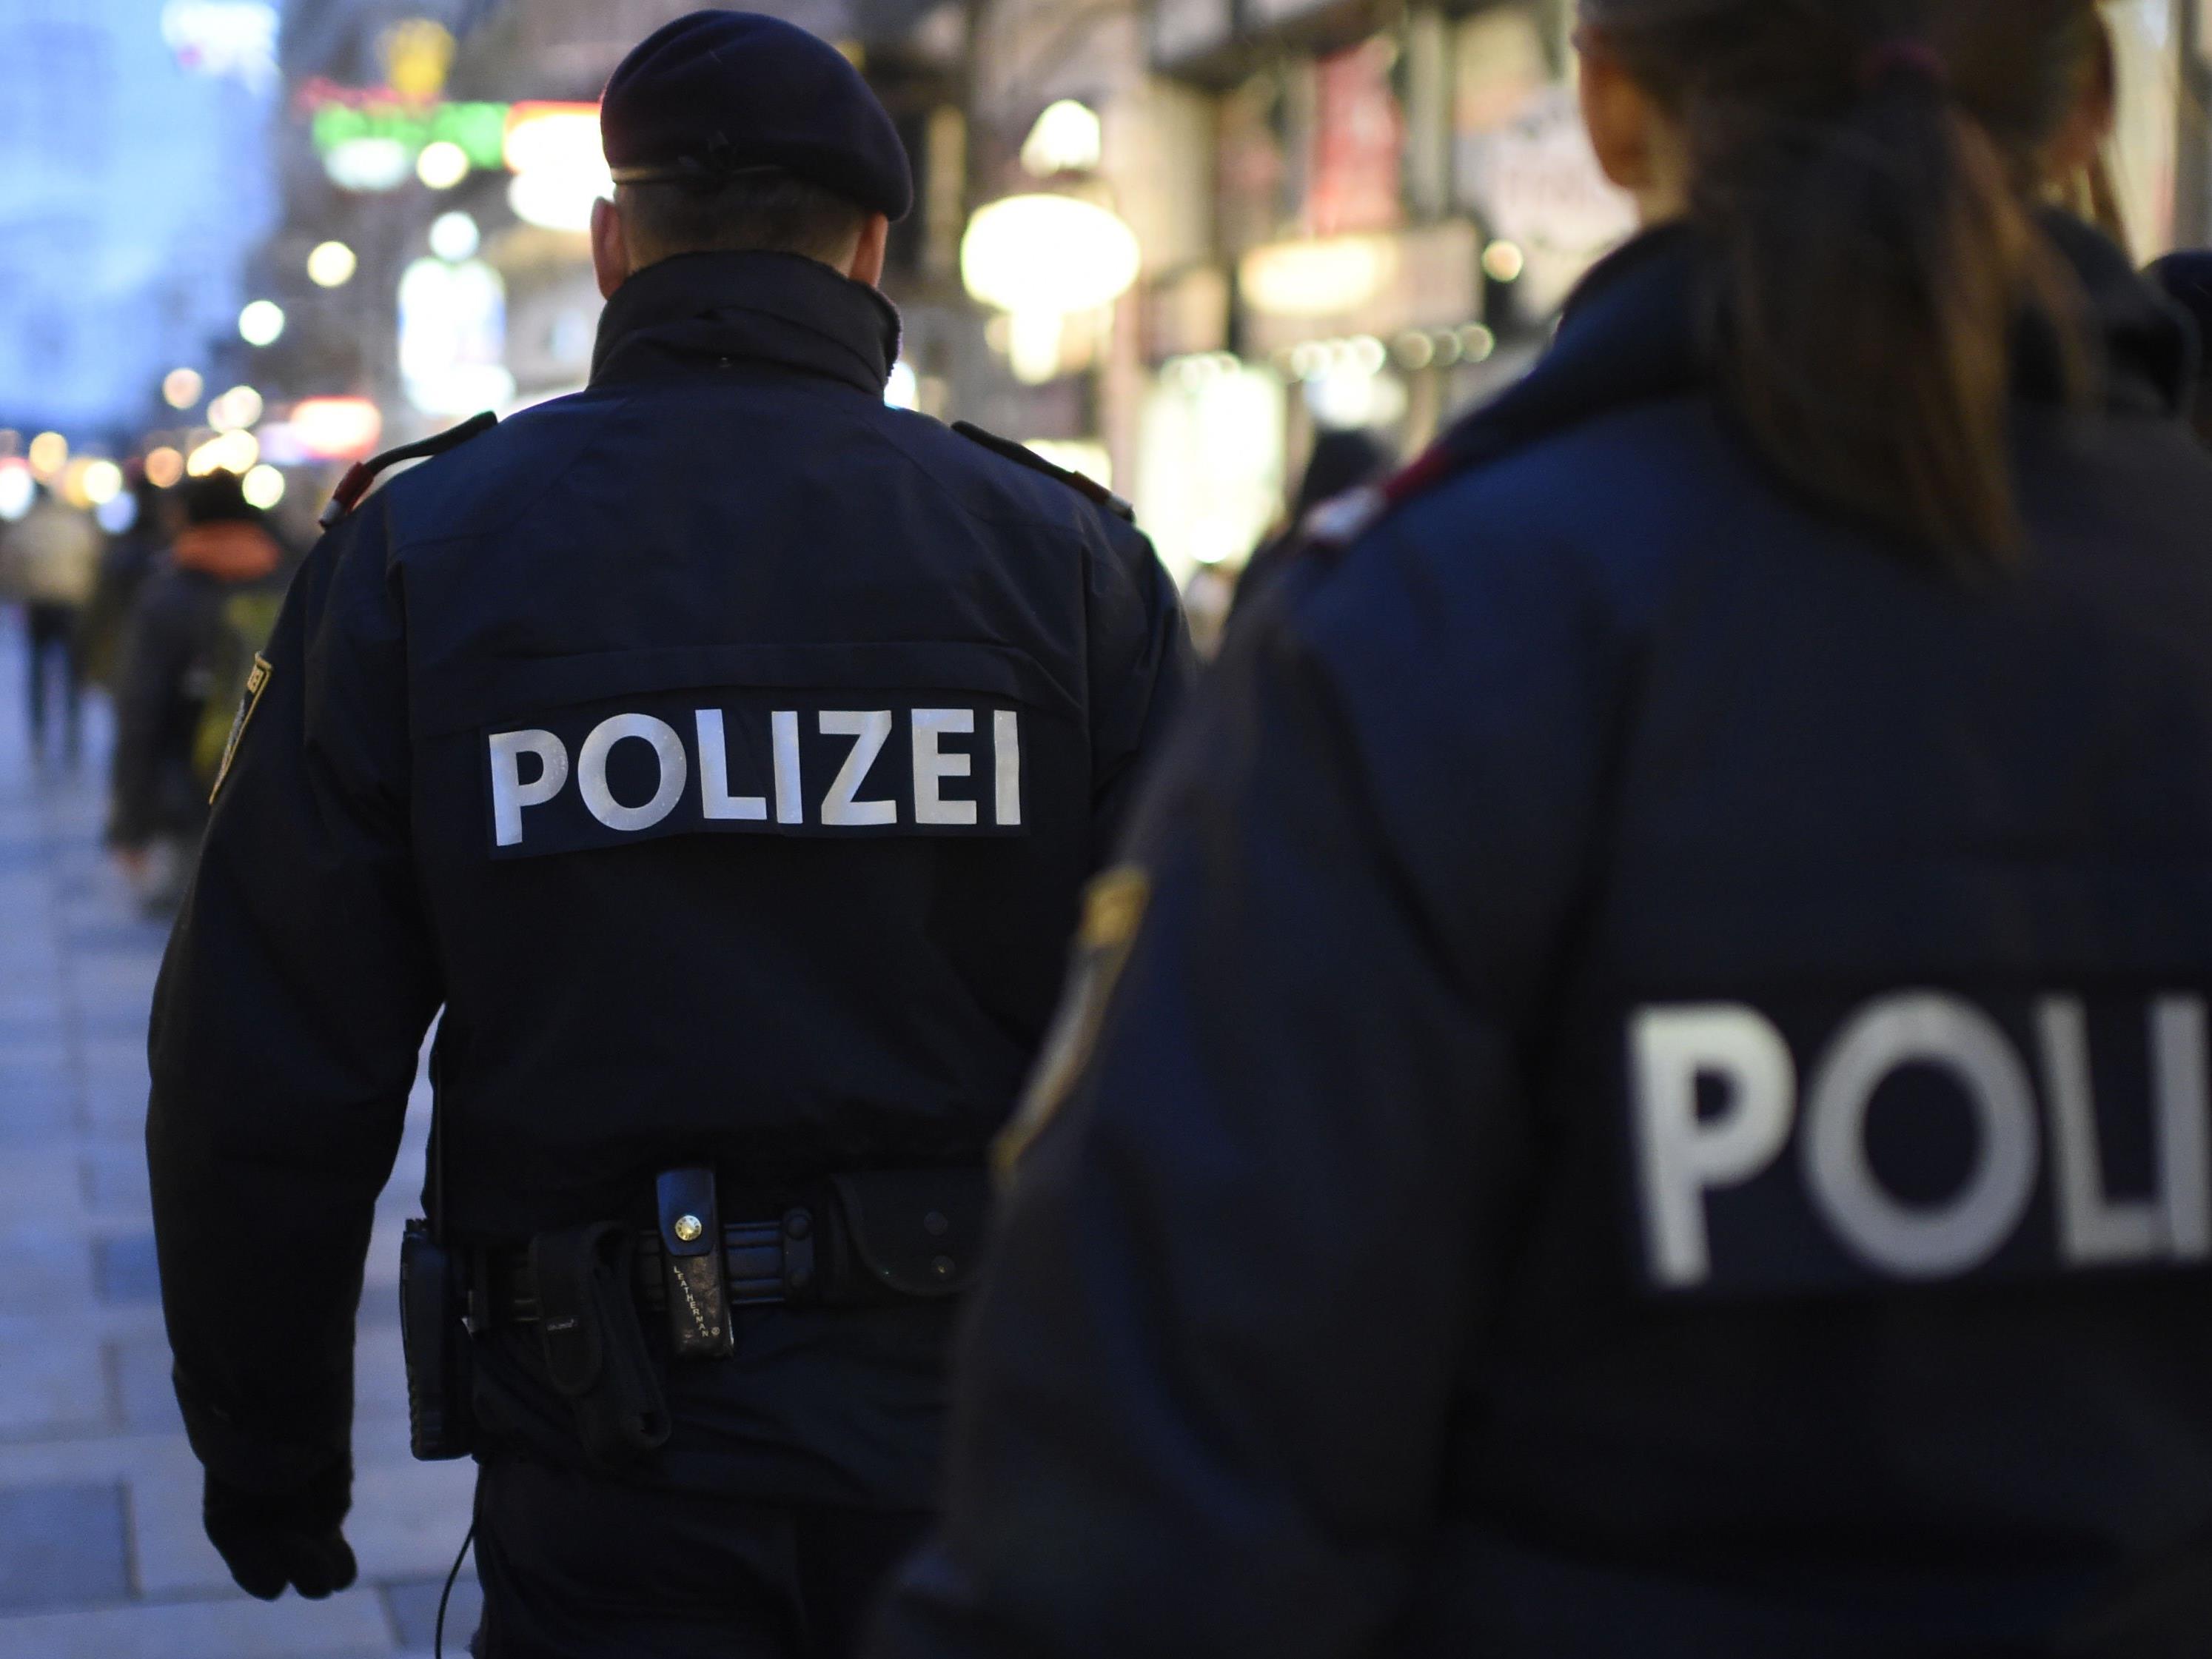 Eine versuchte Messer-Attacke rief die Wiener Polizei auf den Plan